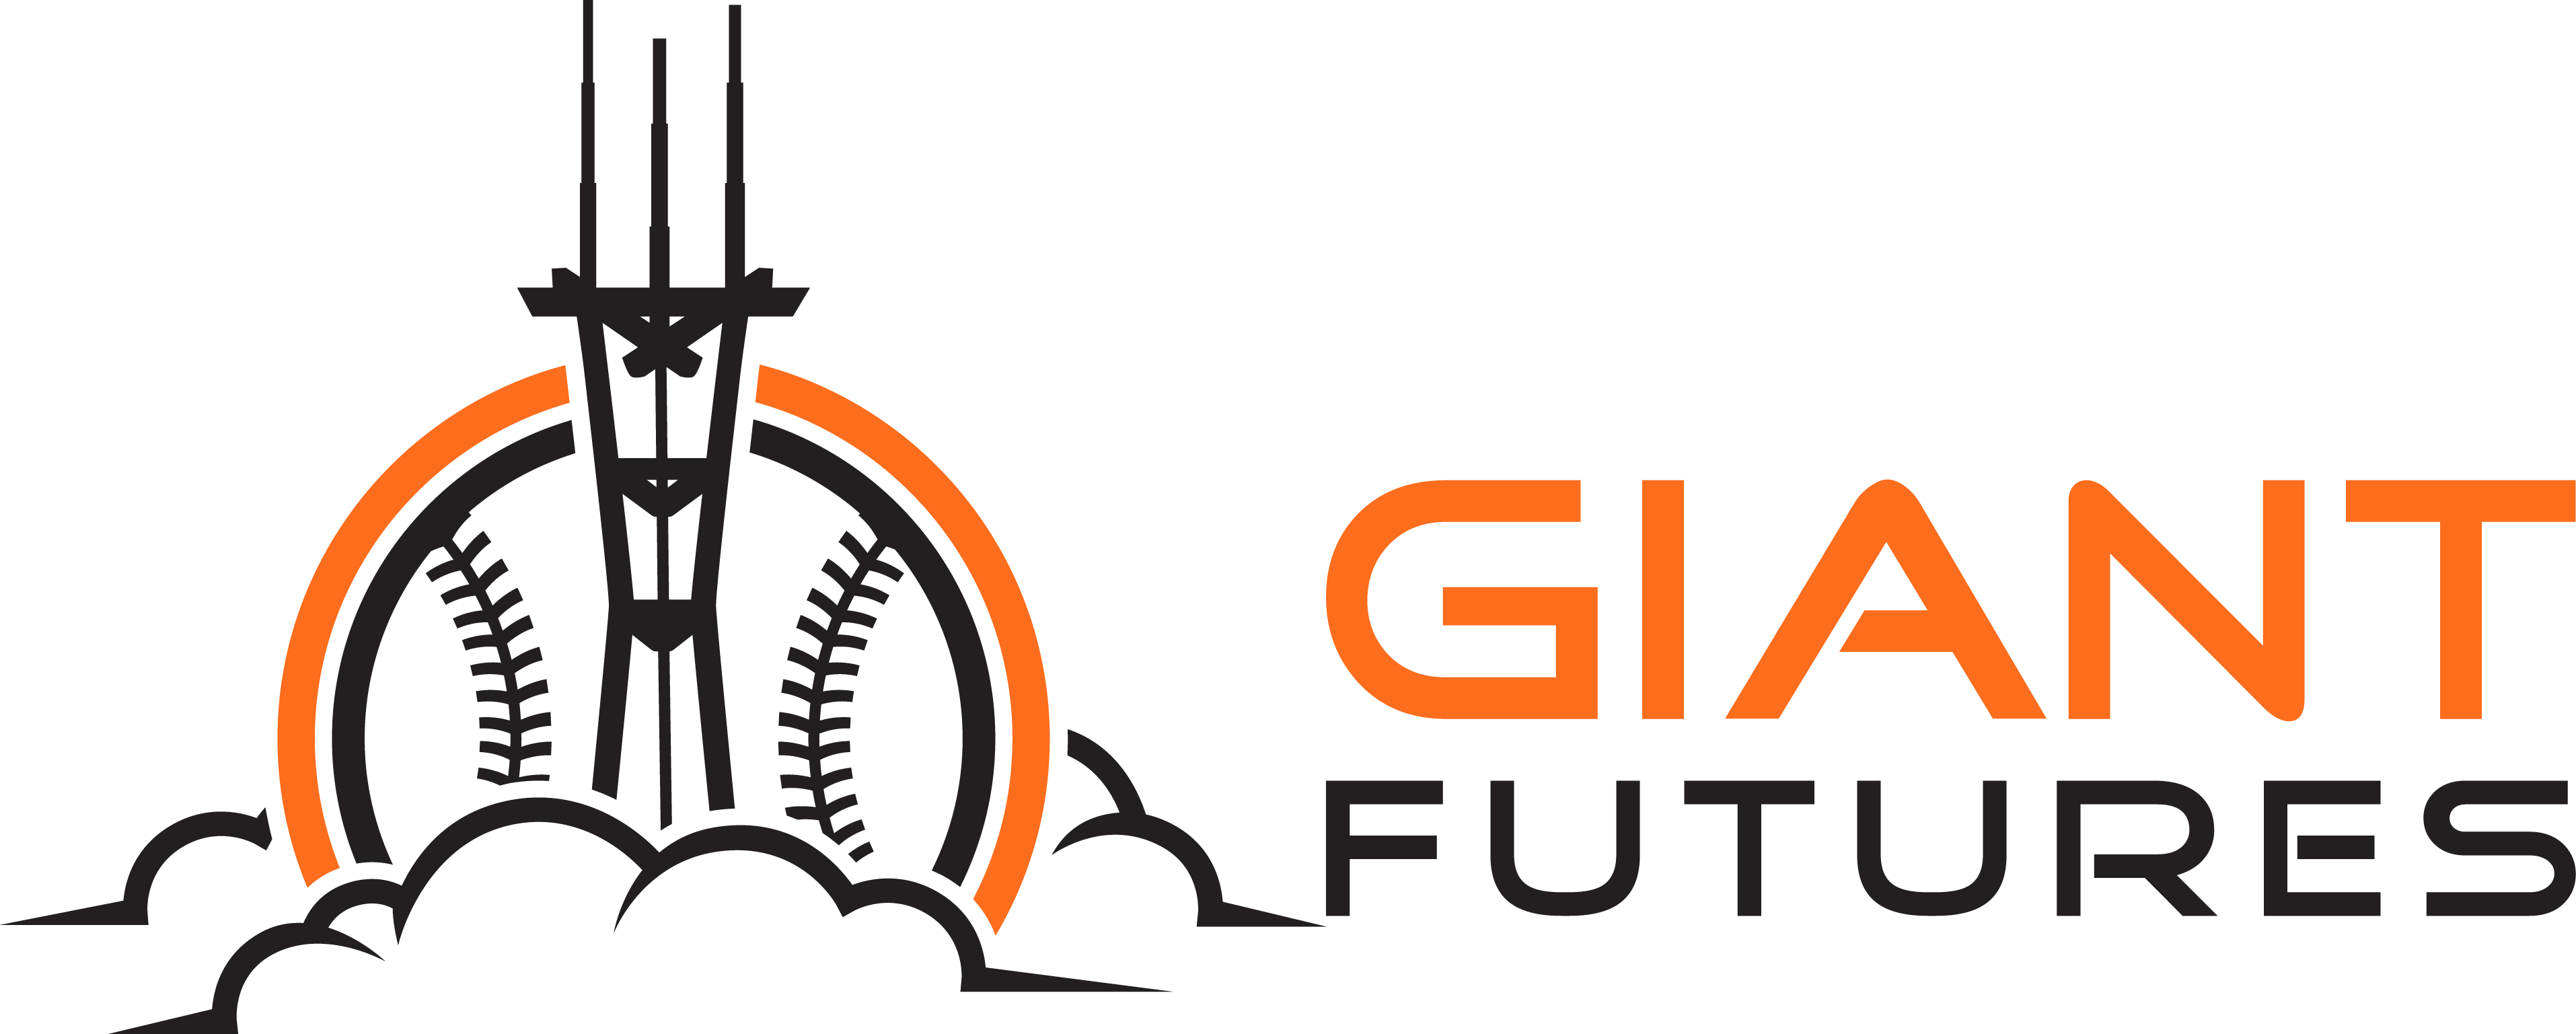 Giant Futures